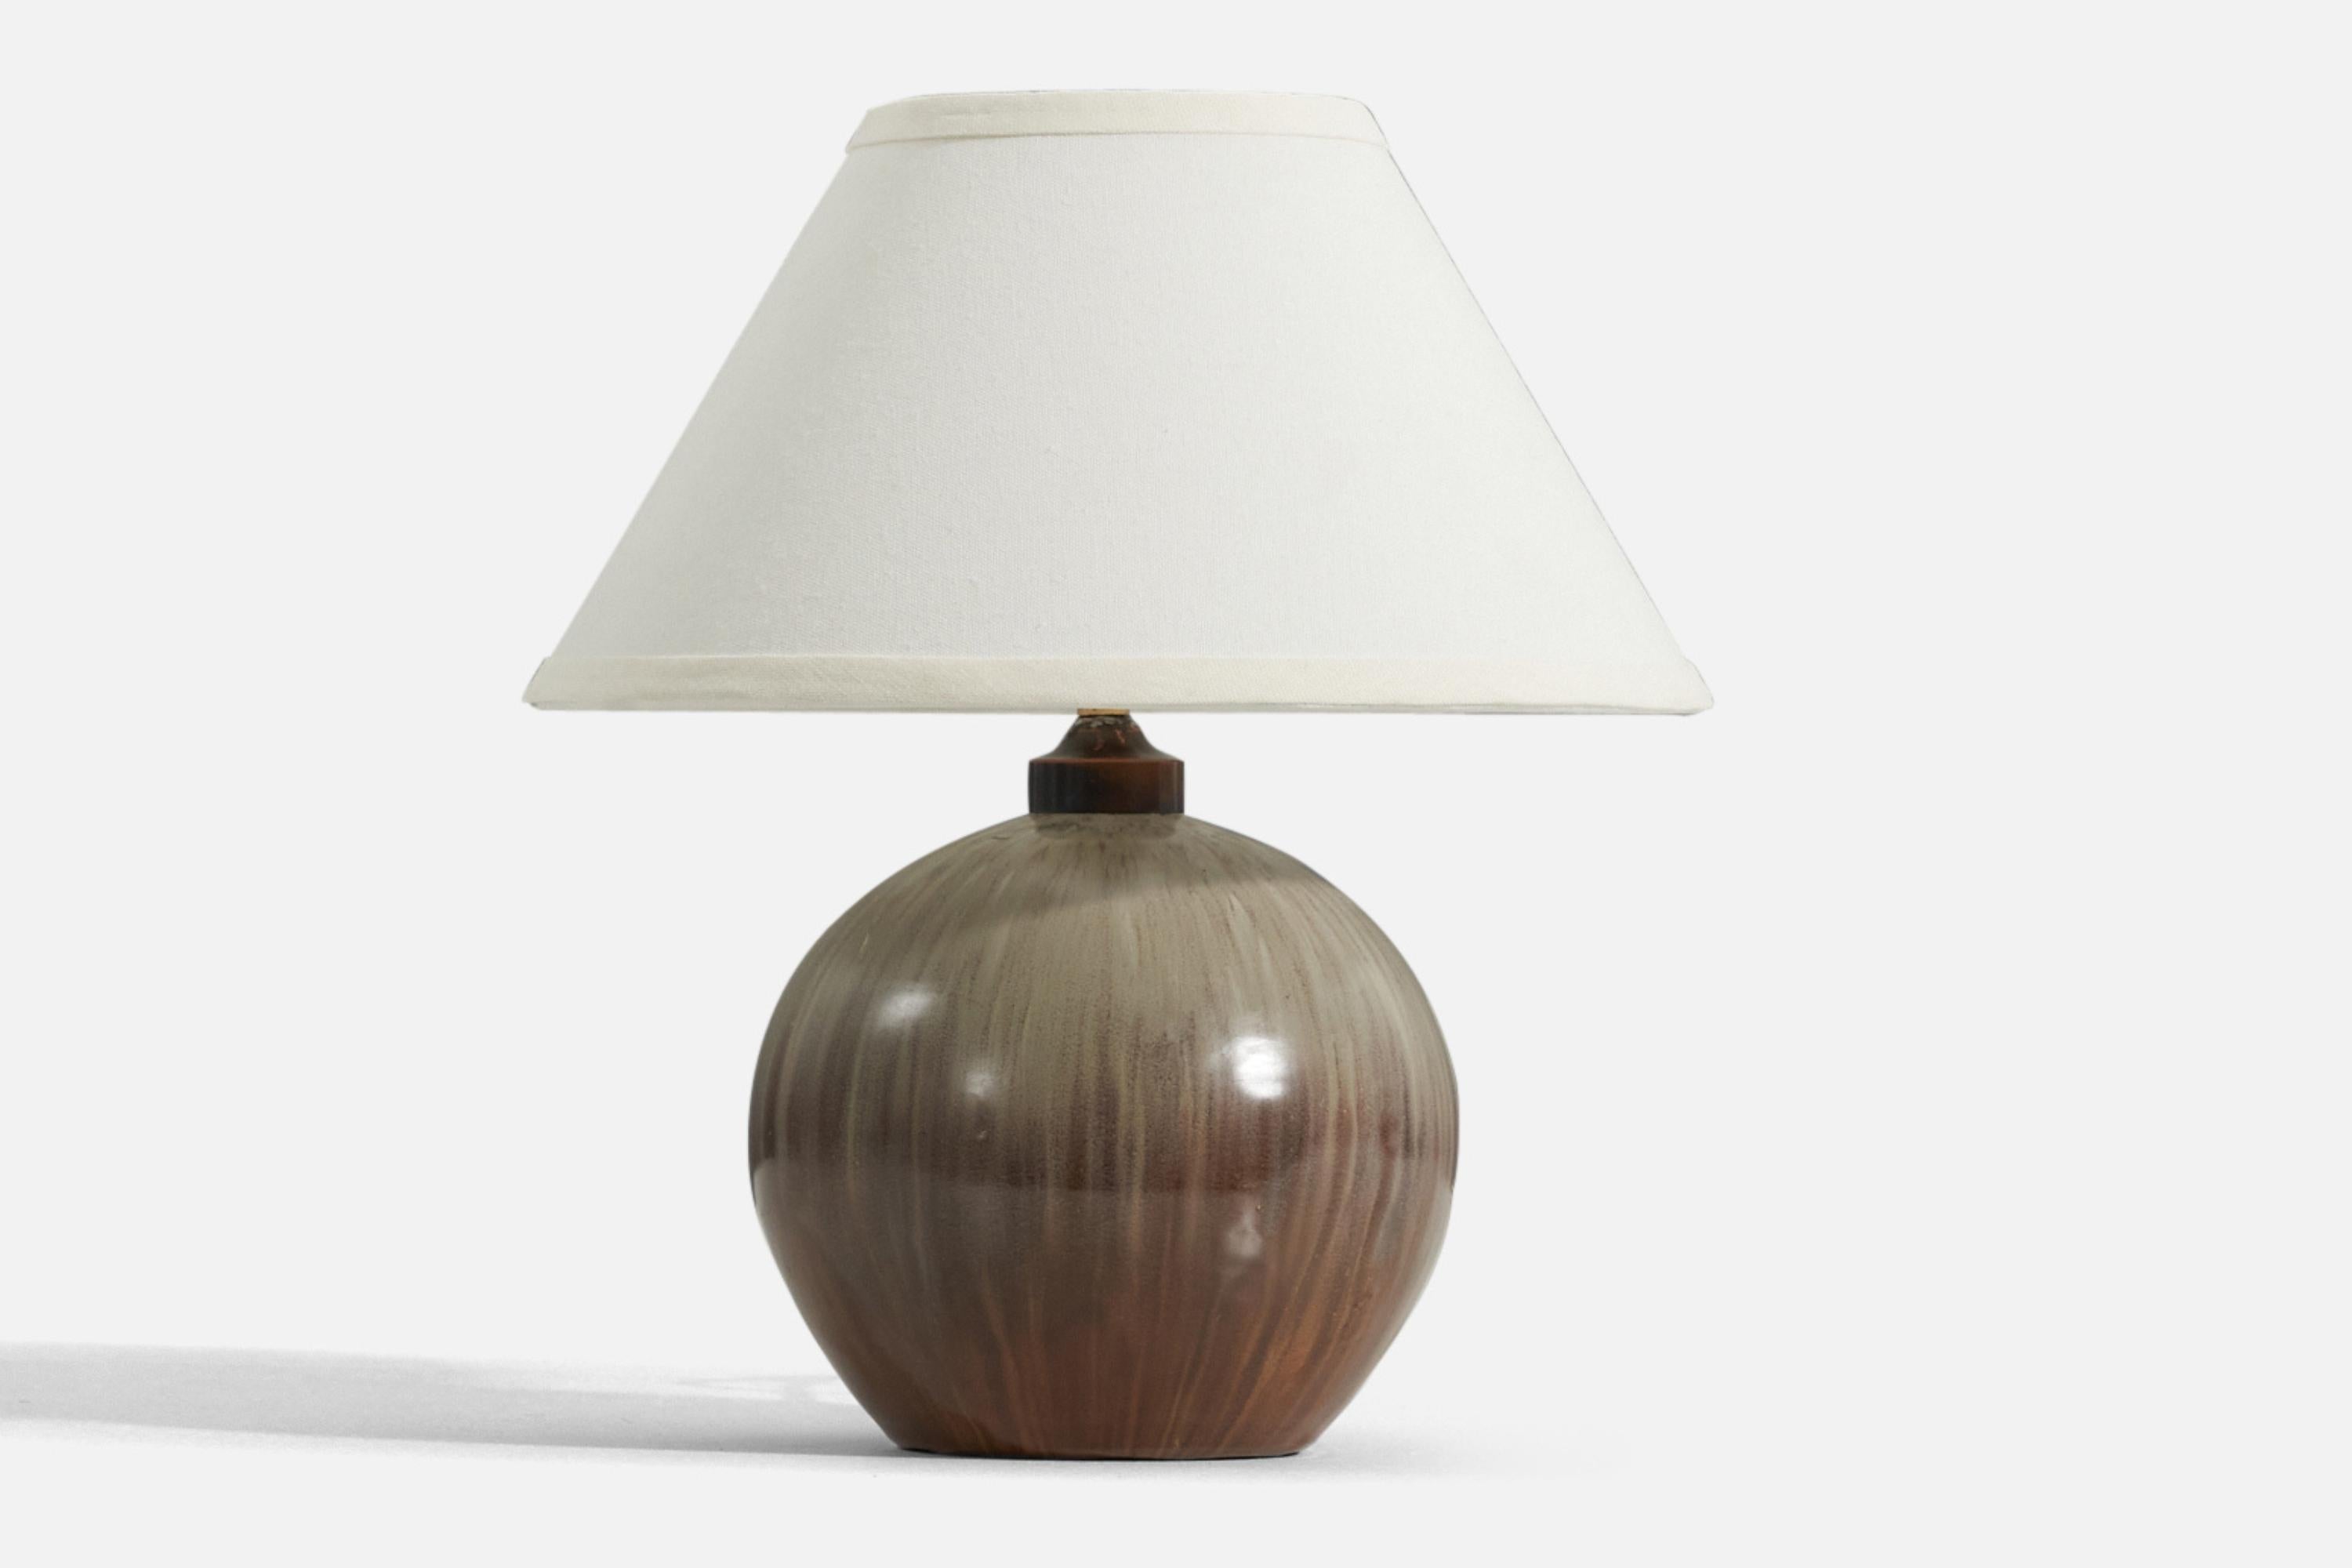 Tischlampe aus braunem und grau glasiertem Steingut, entworfen und hergestellt in Dänemark, 1940er Jahre.

Die angegebenen Maße beziehen sich auf die Lampe. Verkauft ohne Lampenschirm. Nachstehende Abmessungen dienen als Referenz:

Schirm : 5,25